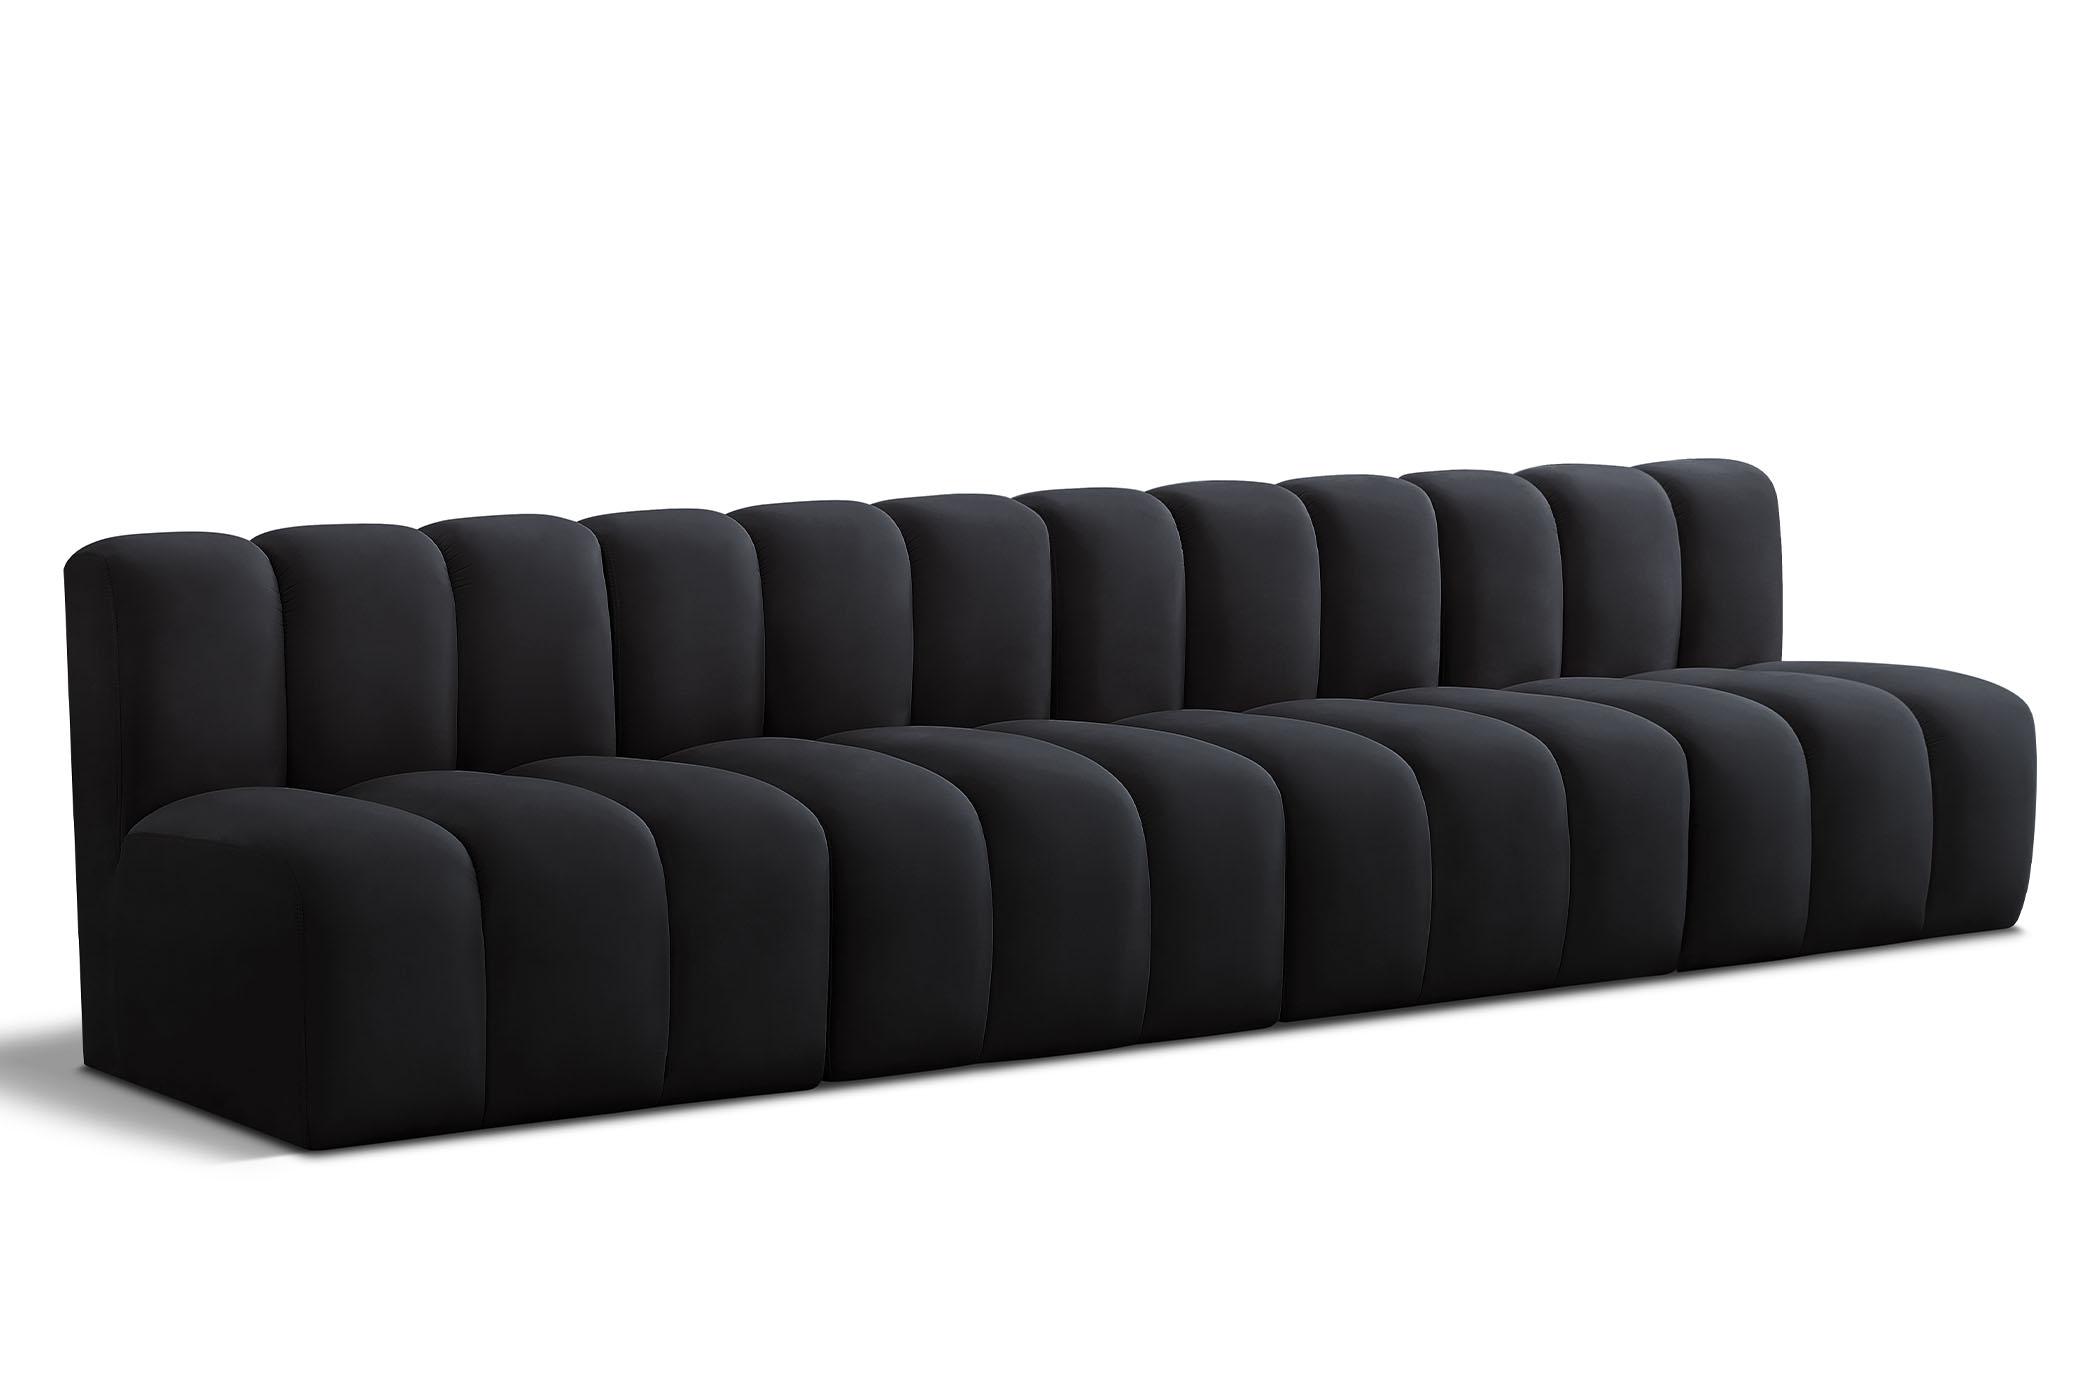 Contemporary, Modern Modular Sectional Sofa ARC 103Black-S4E 103Black-S4E in Black Velvet